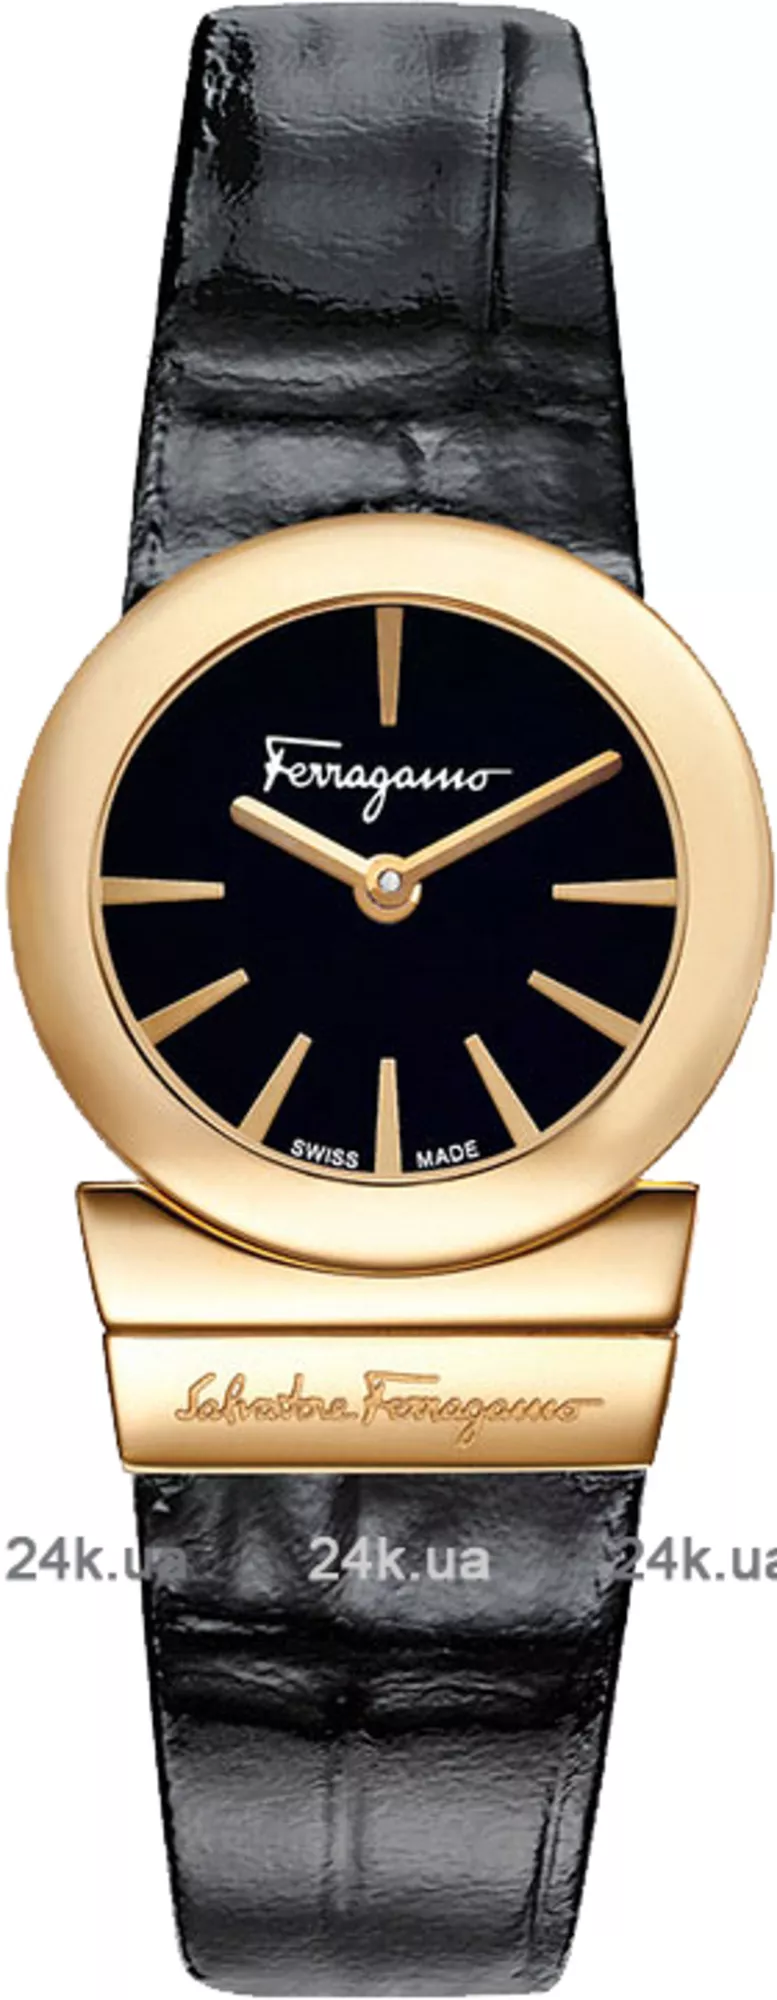 Часы Salvatore Ferragamo Fr70sbq5009 sb09